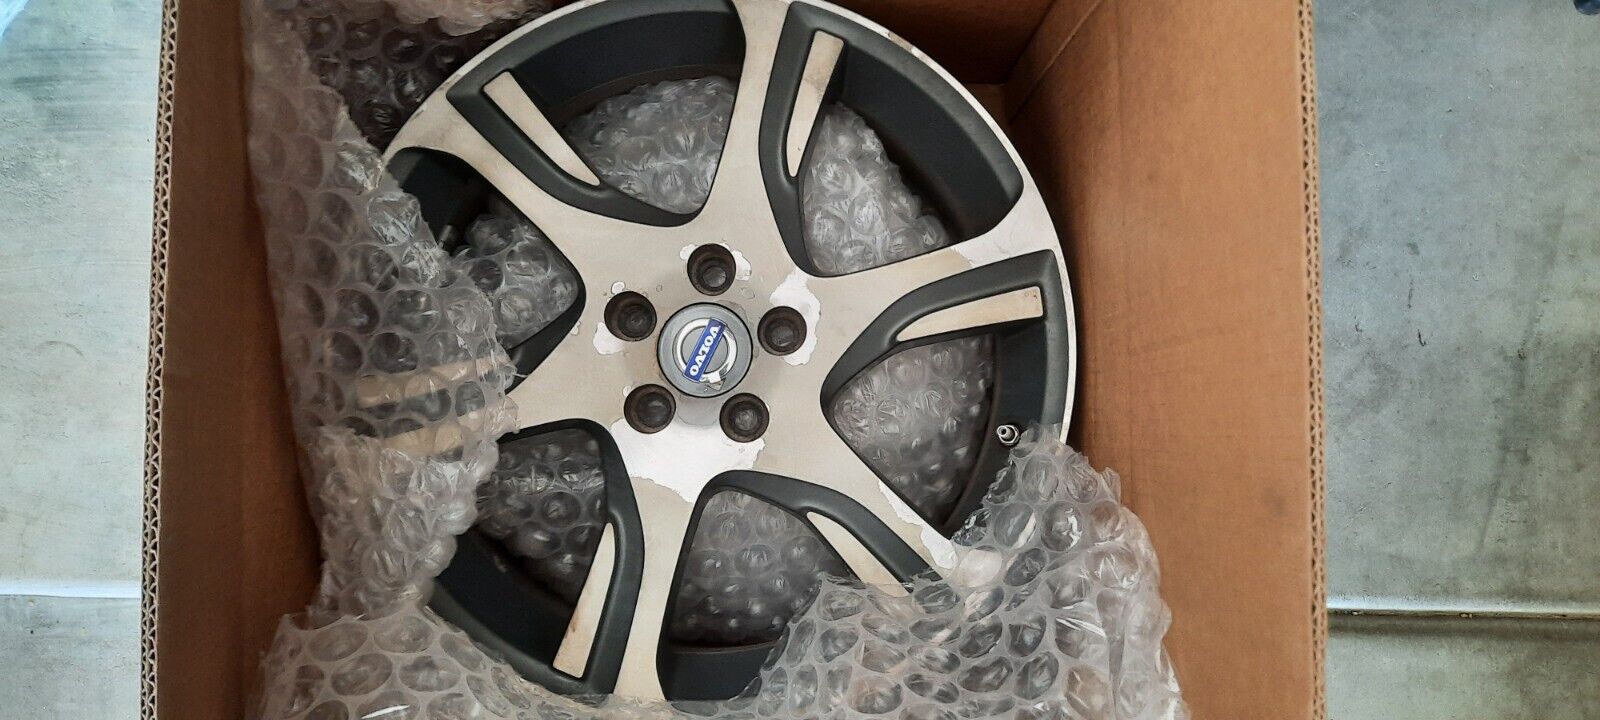 USED - Volvo XC60 XC70 2011 2012 2013 2014 2015 OEM Wheel 18x7.5 Factory 18